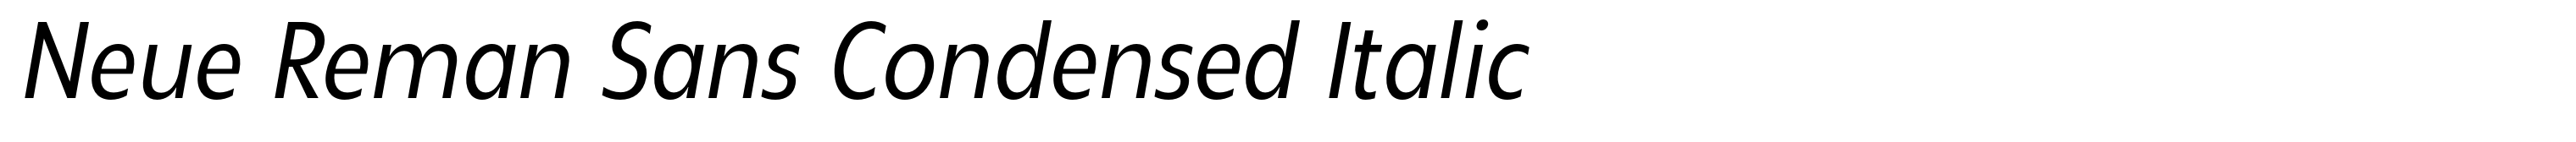 Neue Reman Sans Condensed Italic